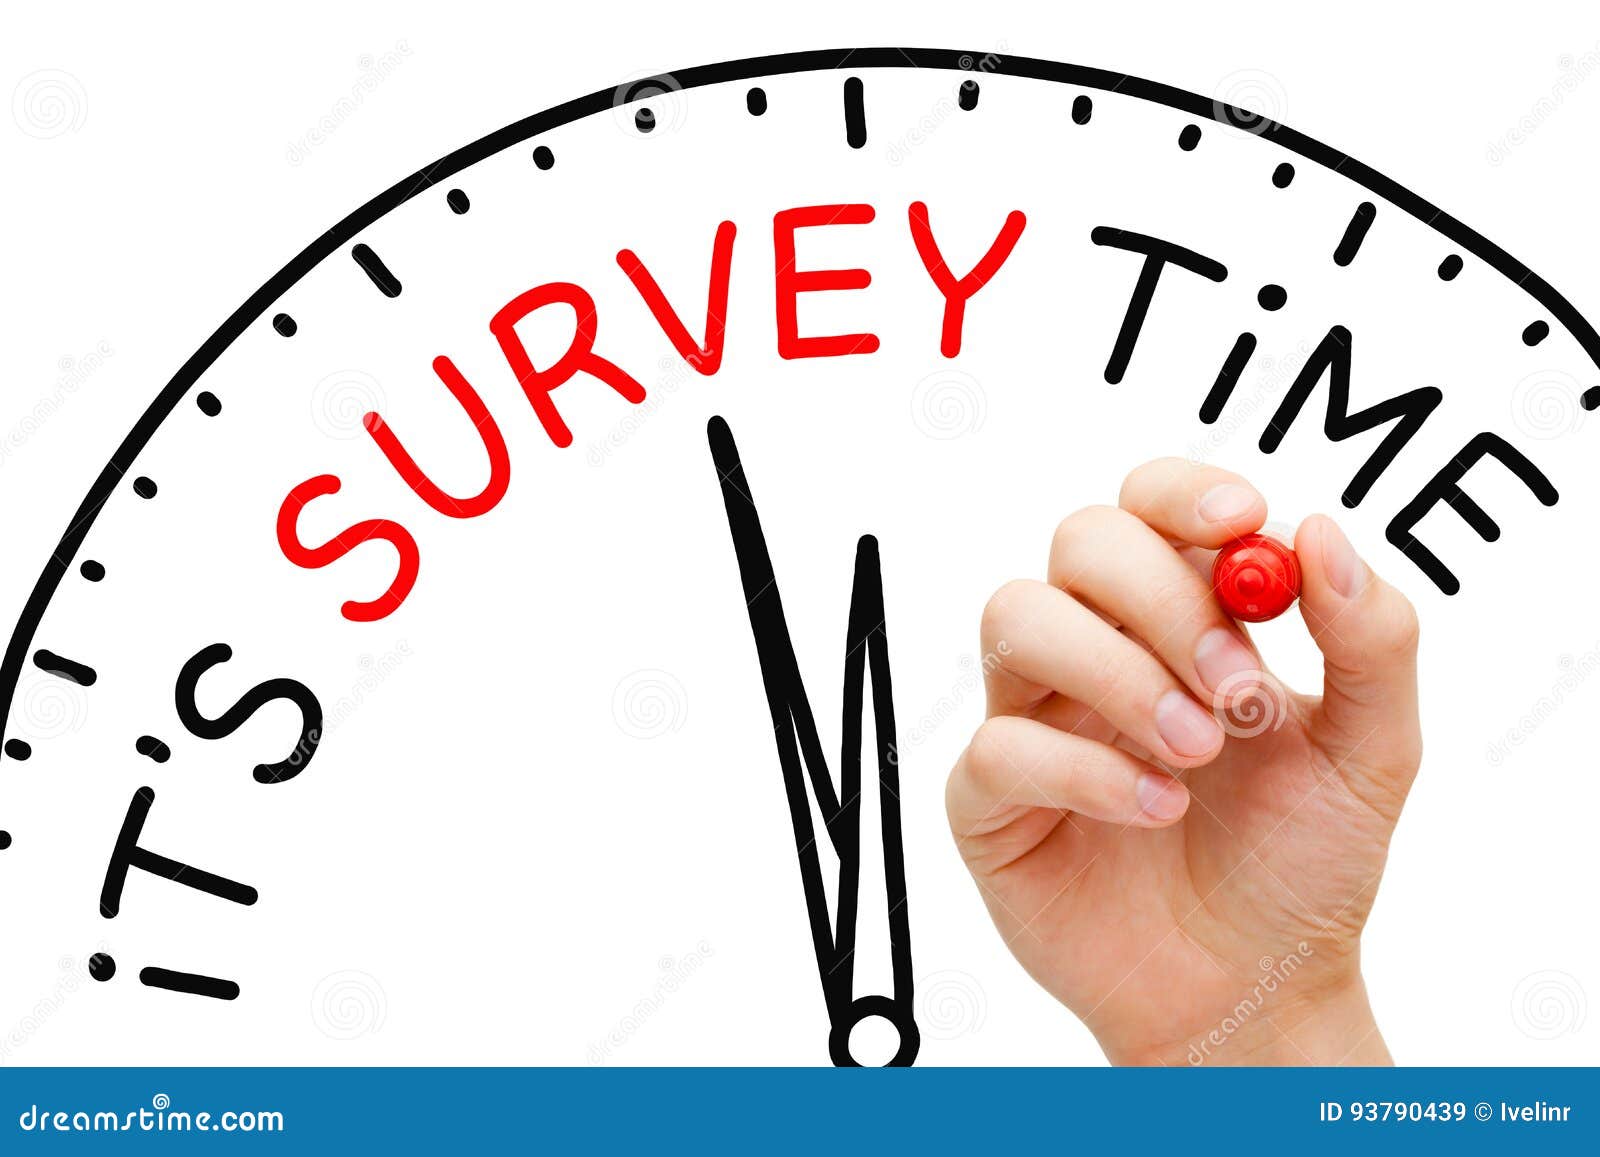 it is survey time concept